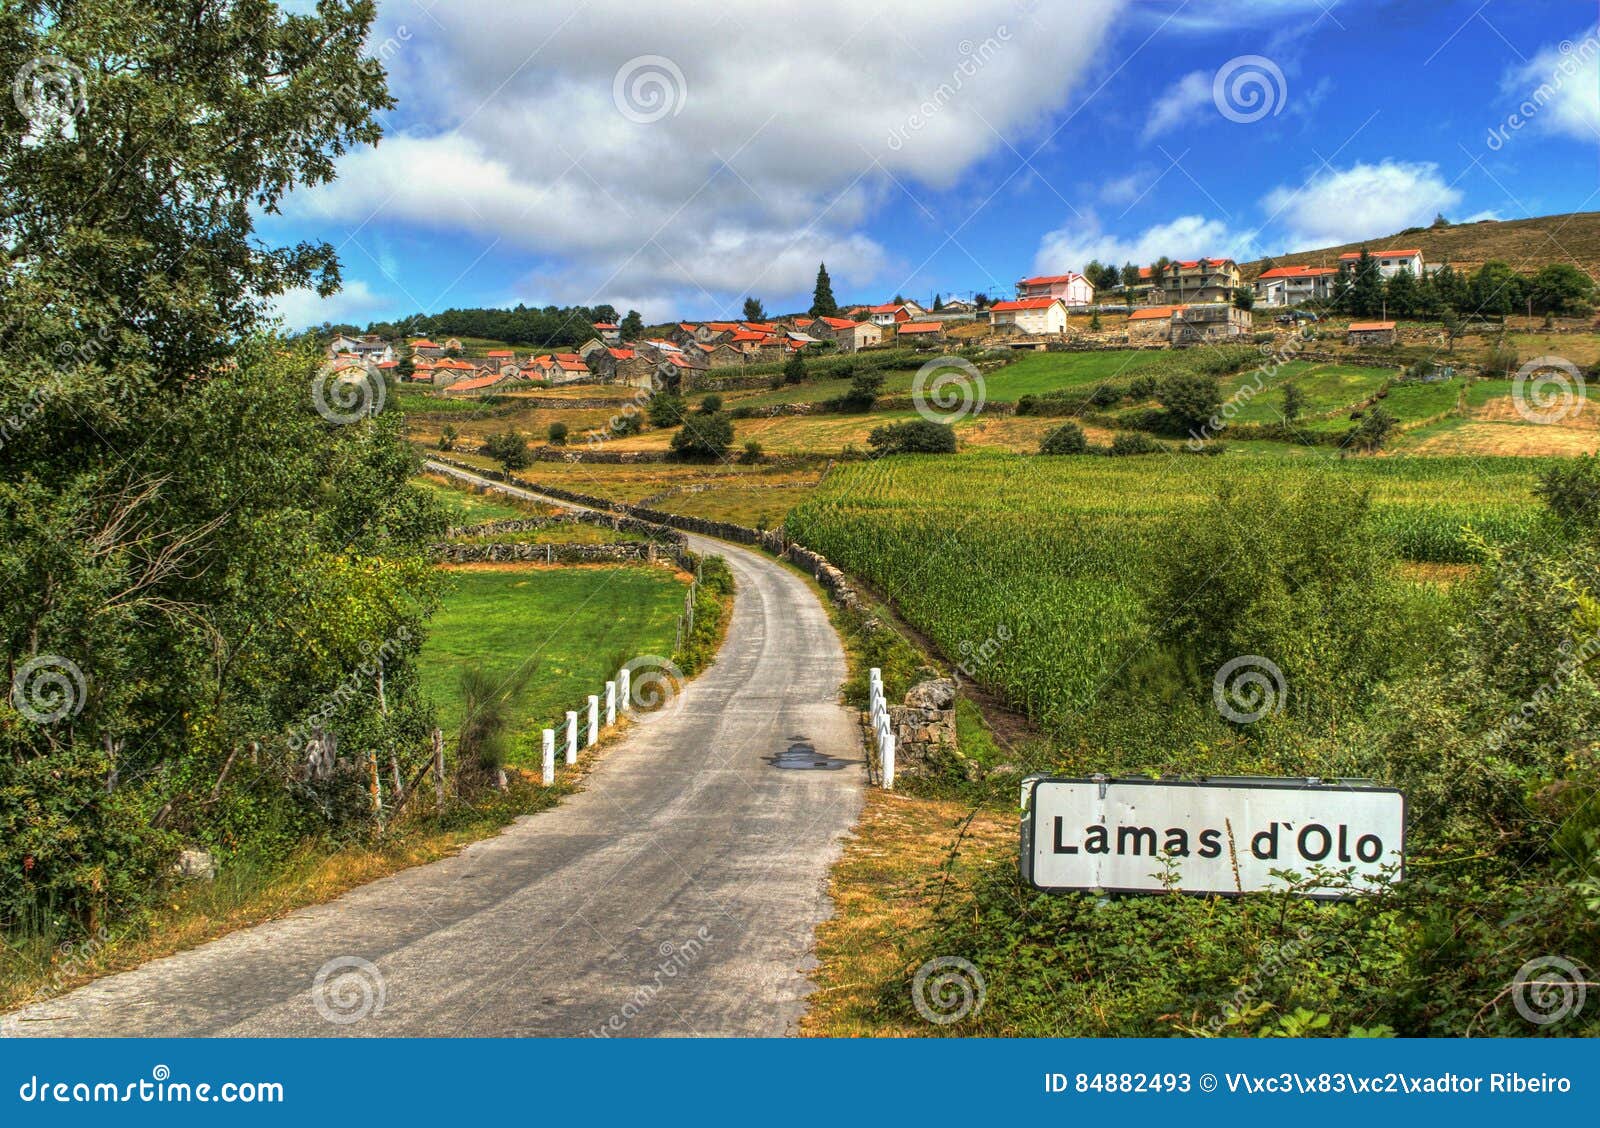 Rural village of Lamas de Olo in Vila Real, Portugal